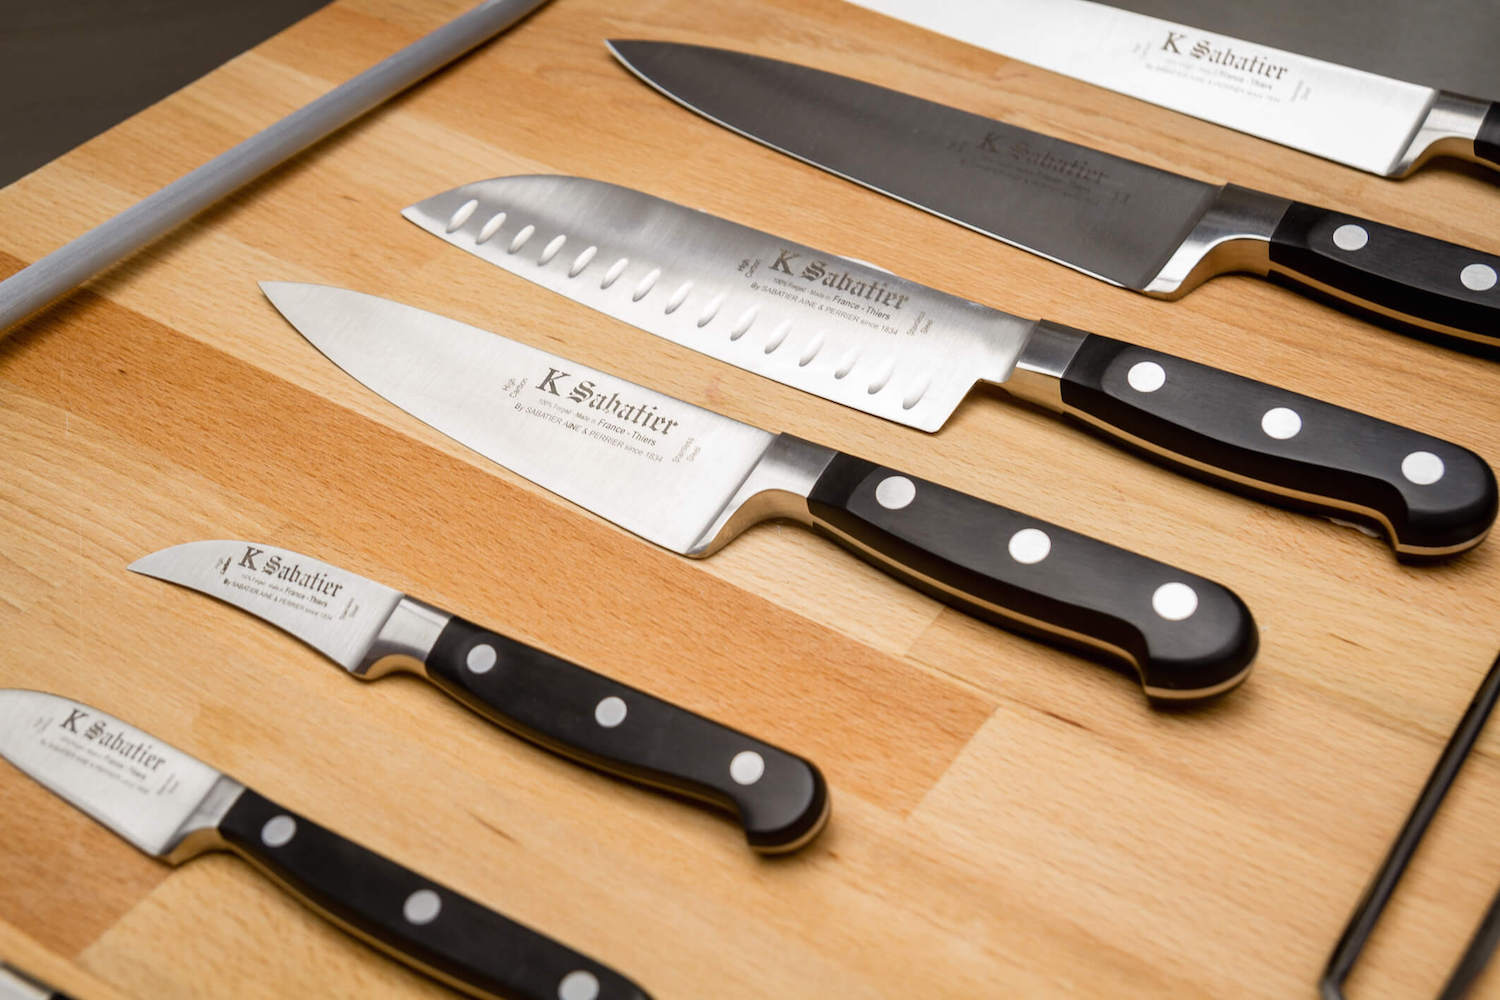 Sabatier knife